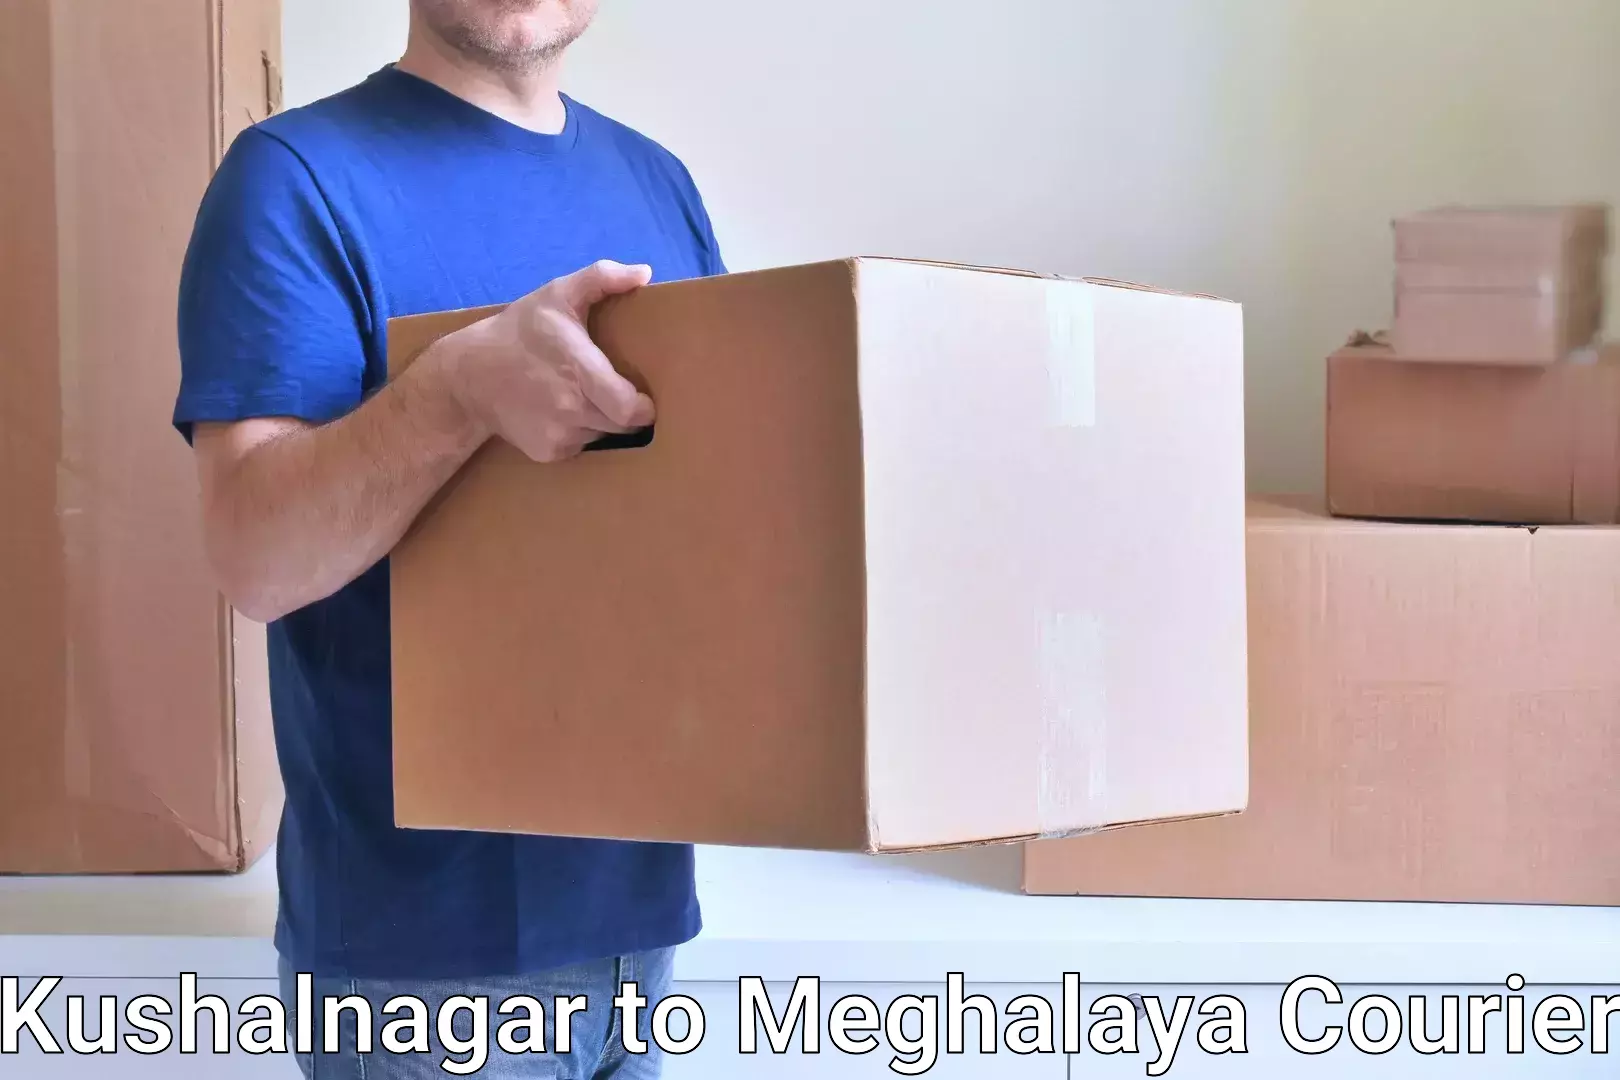 Flexible shipping options Kushalnagar to Meghalaya